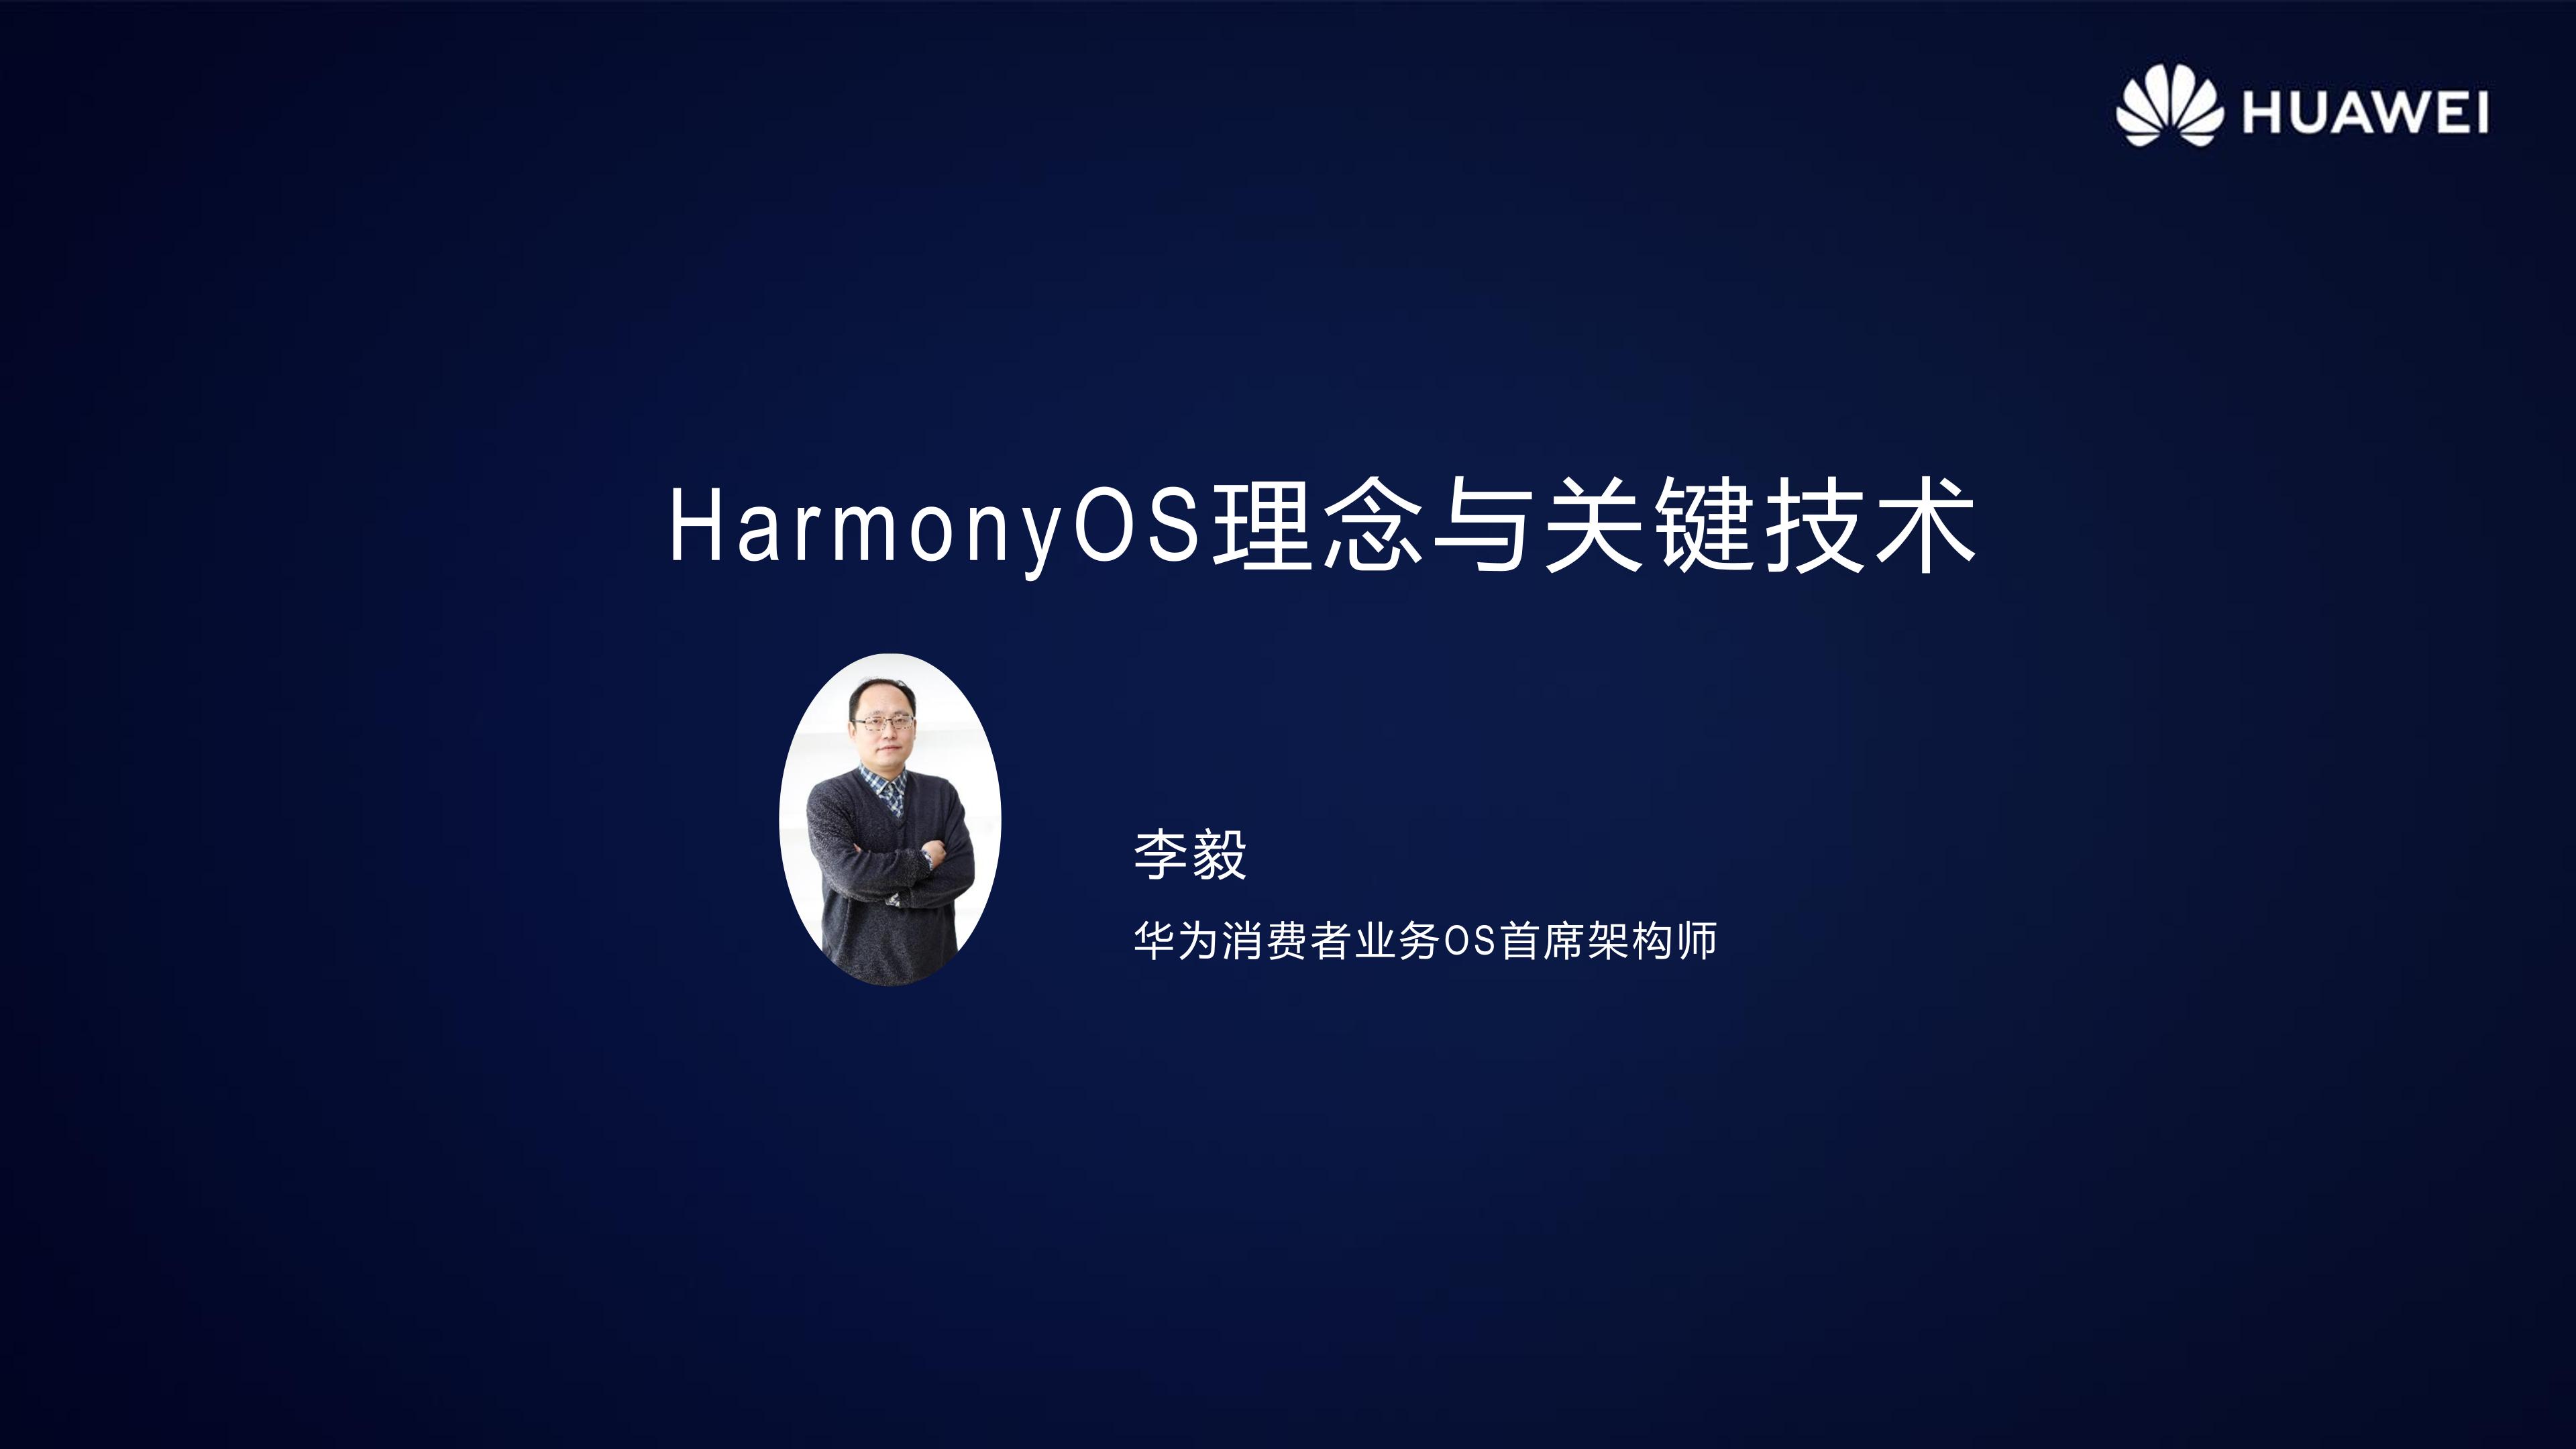 HarmonyOS 2.0手机开发者Beta活动广州站内部PPT公开-开源基础软件社区